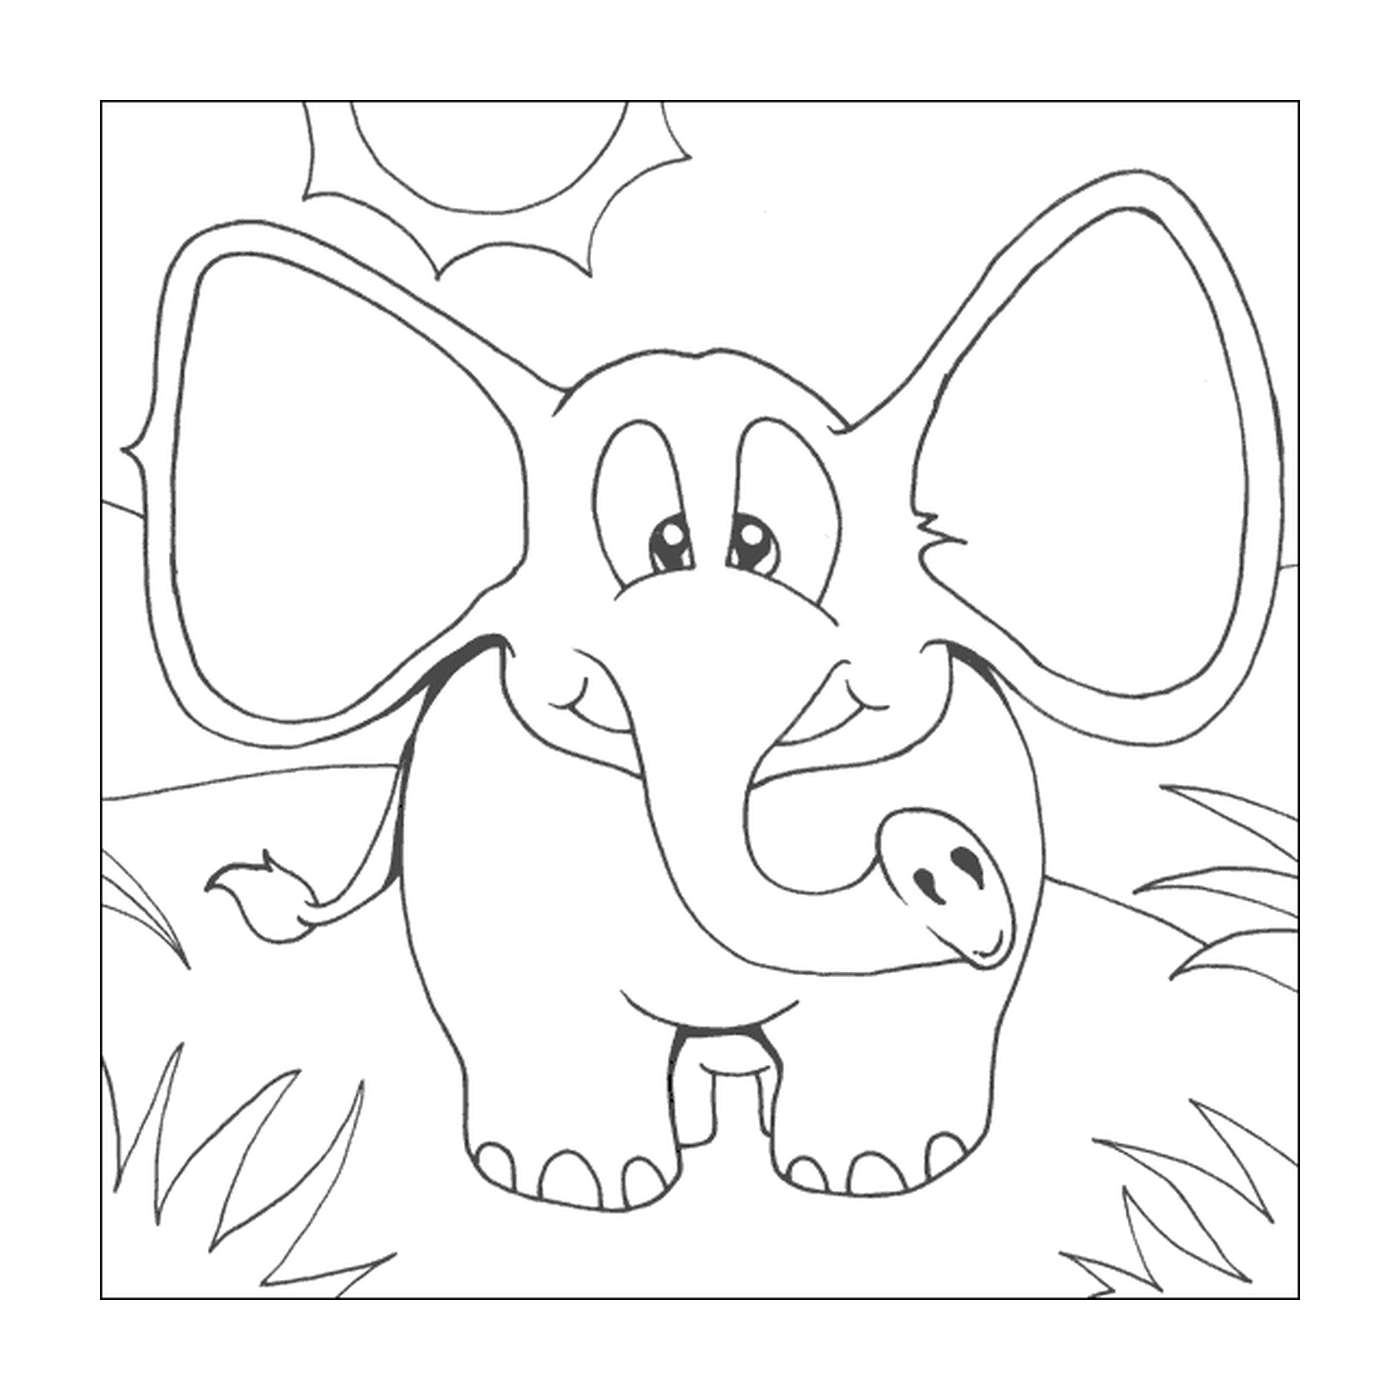  A smiling elephant 